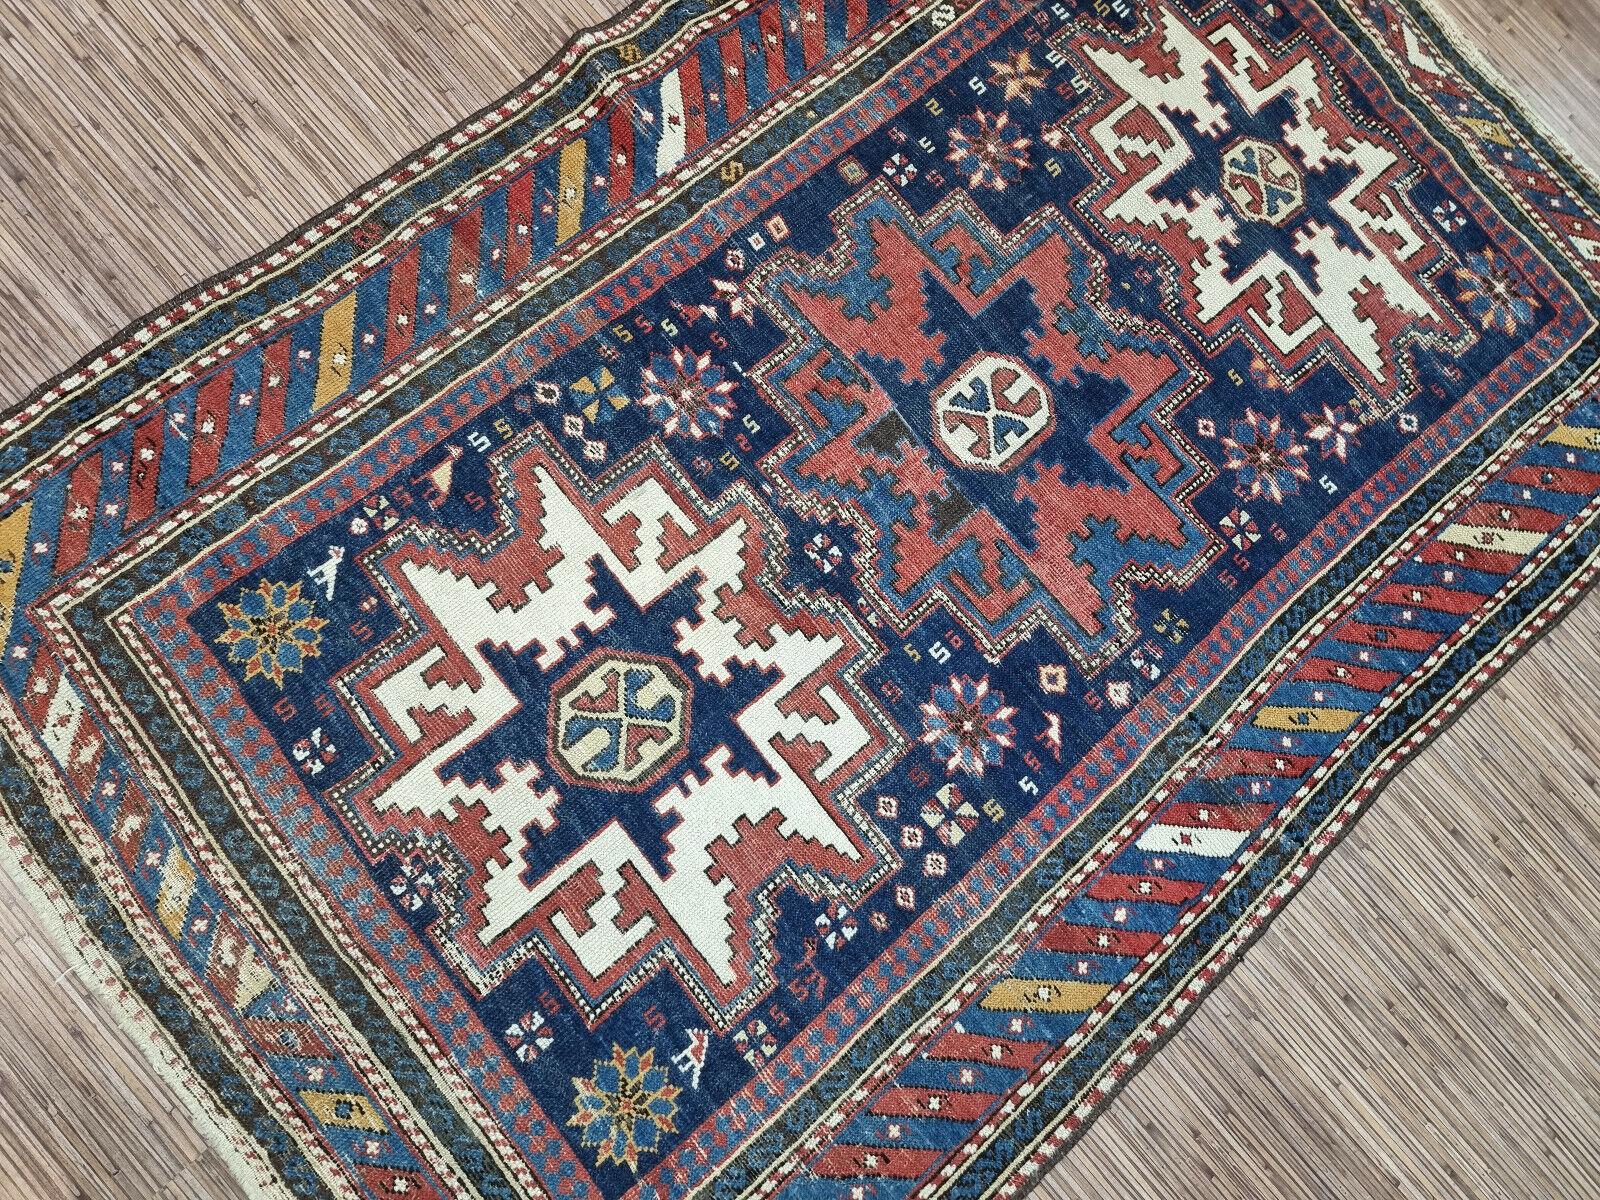 Tauchen Sie ein in die satten, leuchtenden Farbtöne und komplizierten Muster dieses exquisiten, handgefertigten antiken kaukasischen Schirwan-Teppichs. Mit einer großzügigen Größe von 3,4' x 5,2' ist dieses Meisterwerk aus den 1900er Jahren ein